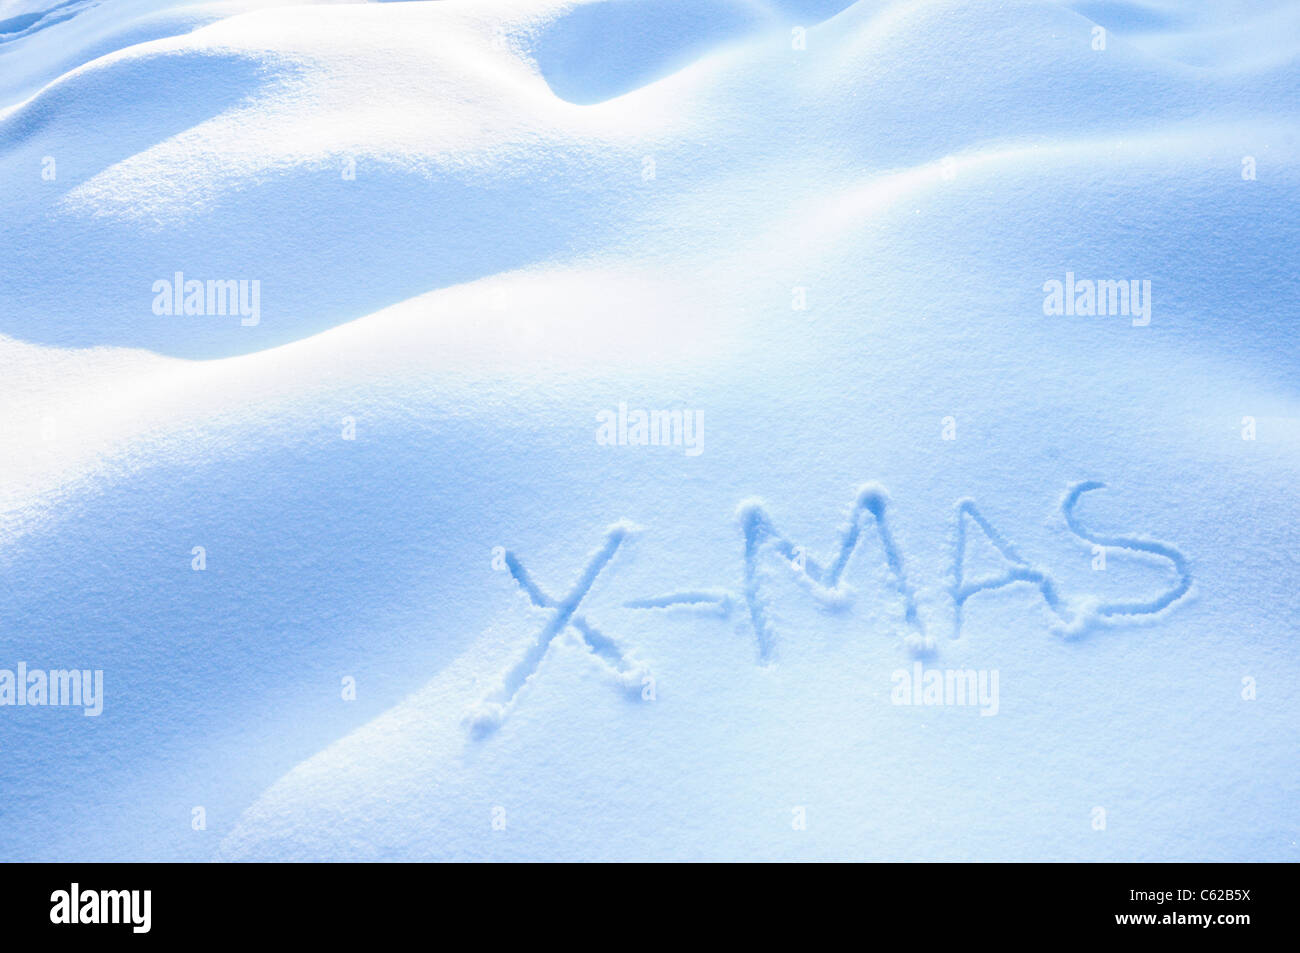 X-Mas in Snow Stock Photo